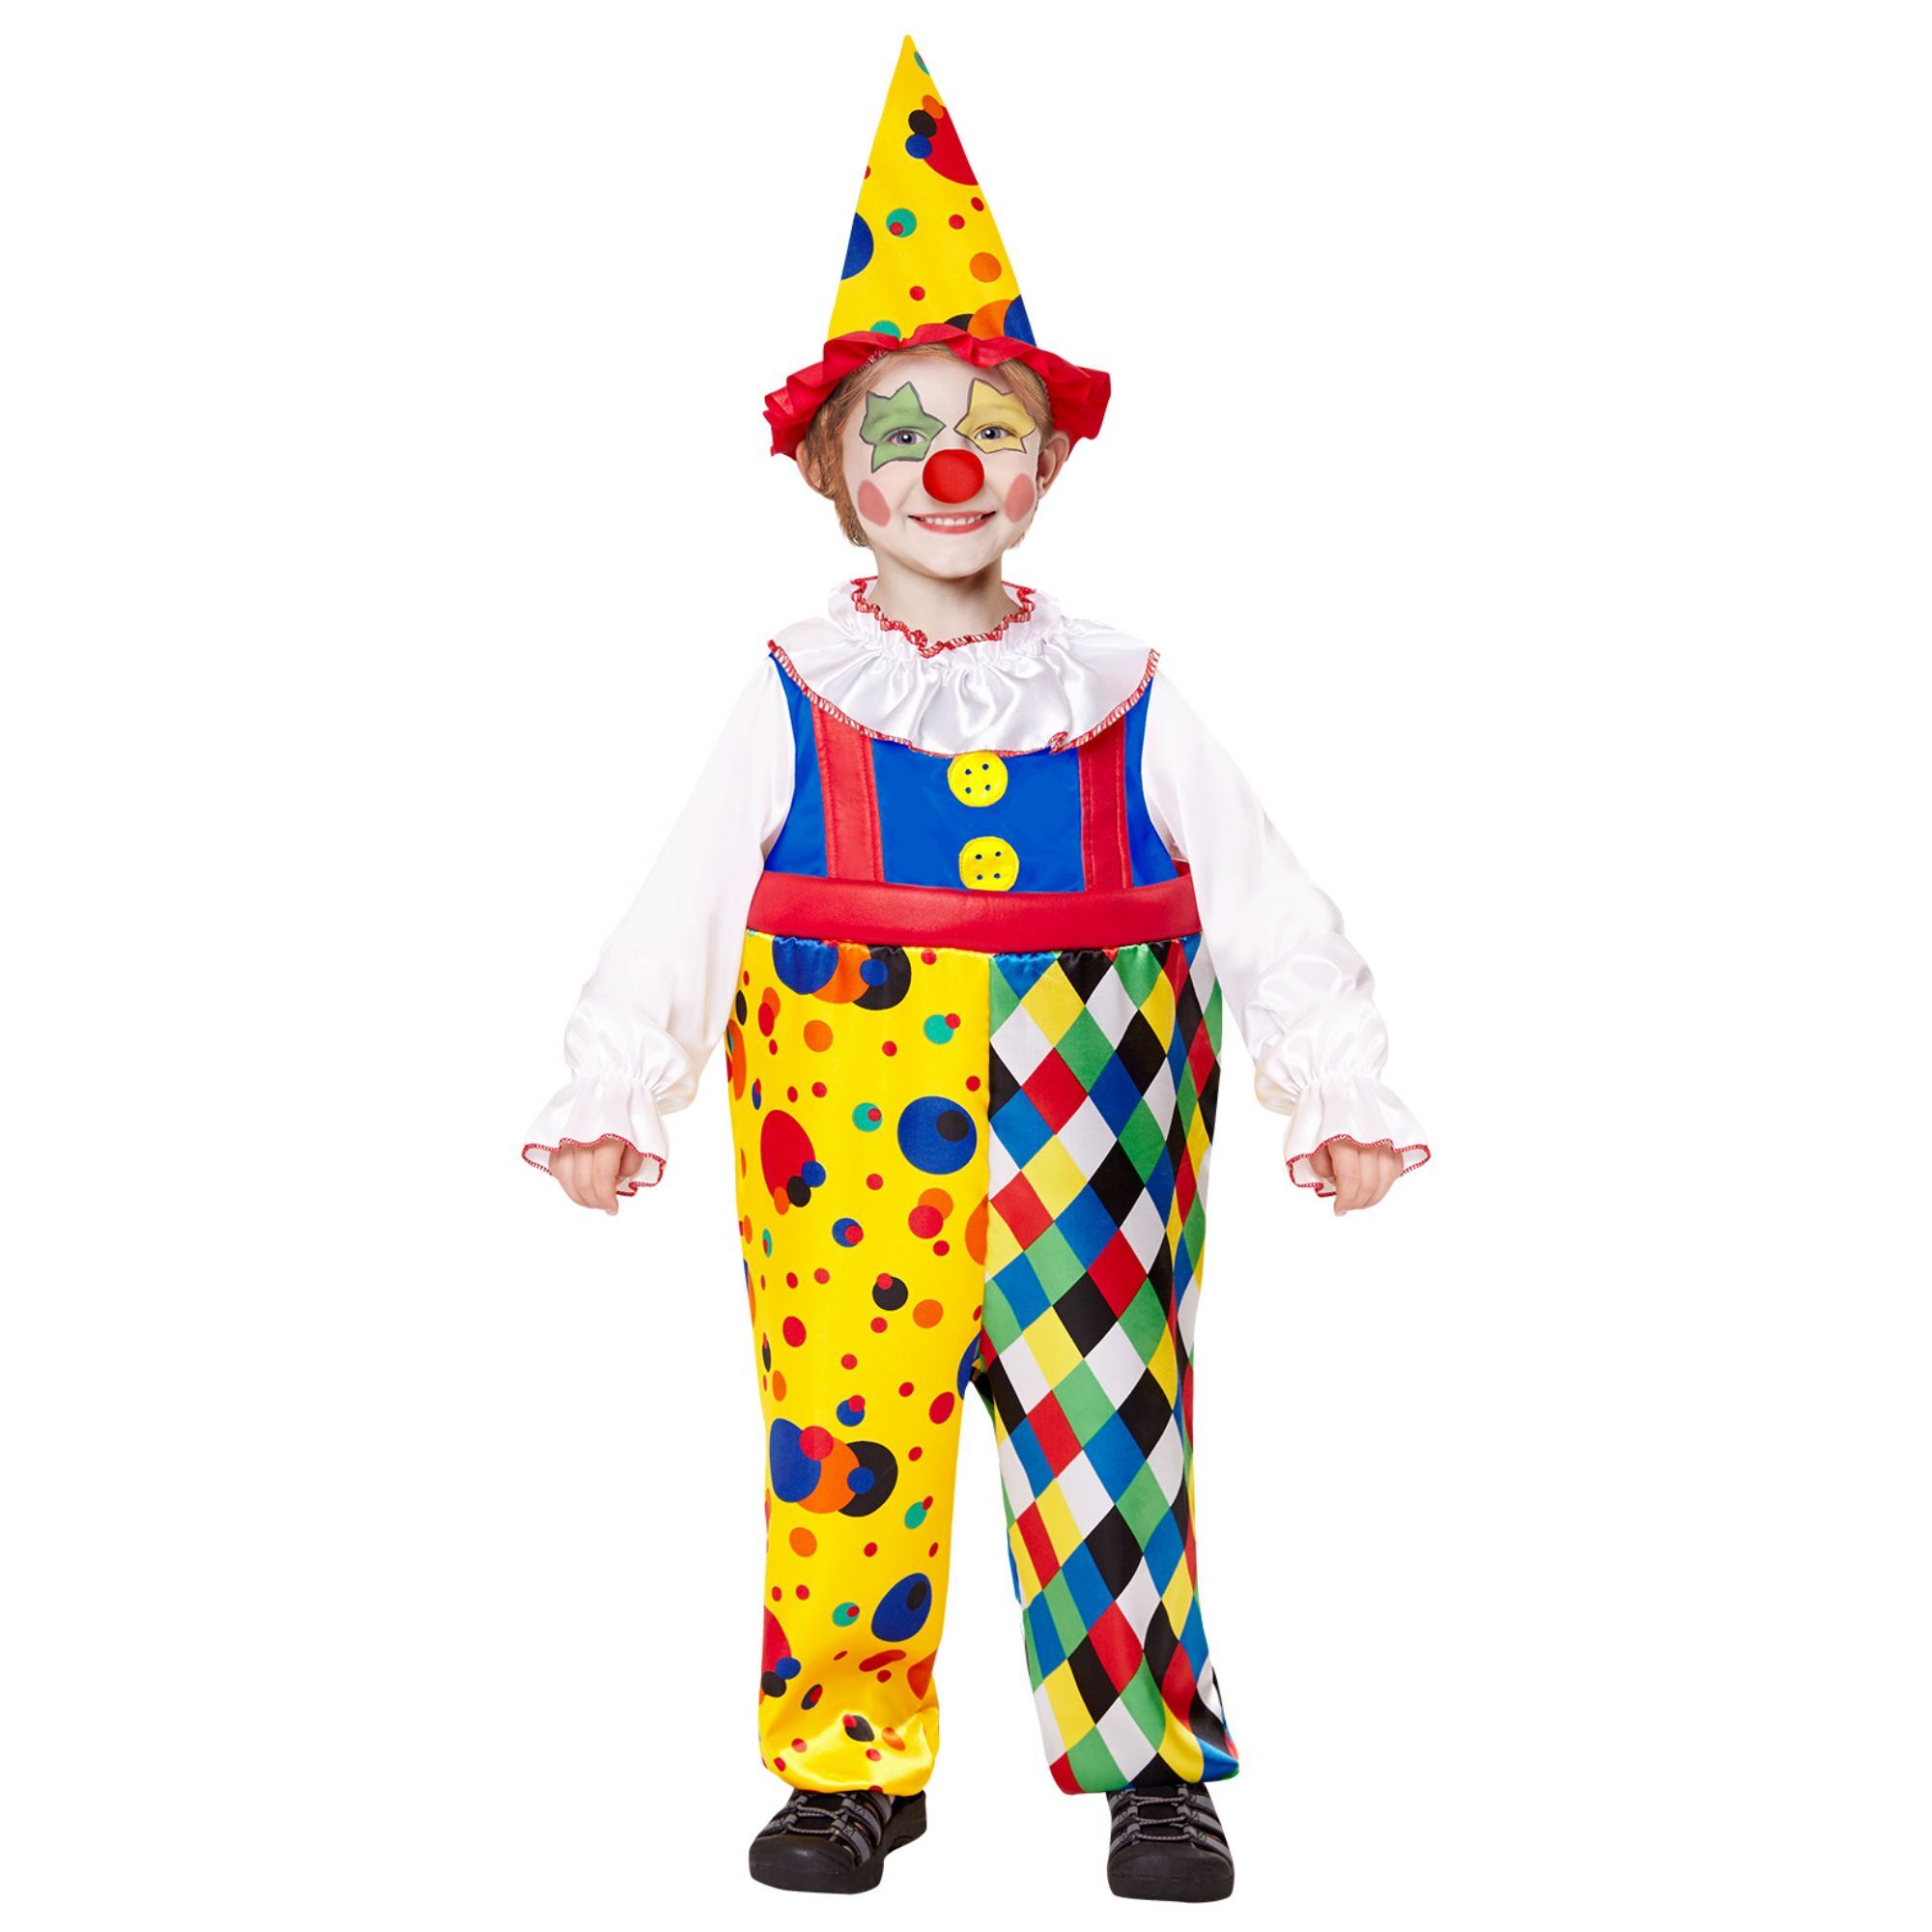 Fleurig clownspak jongen clown billy